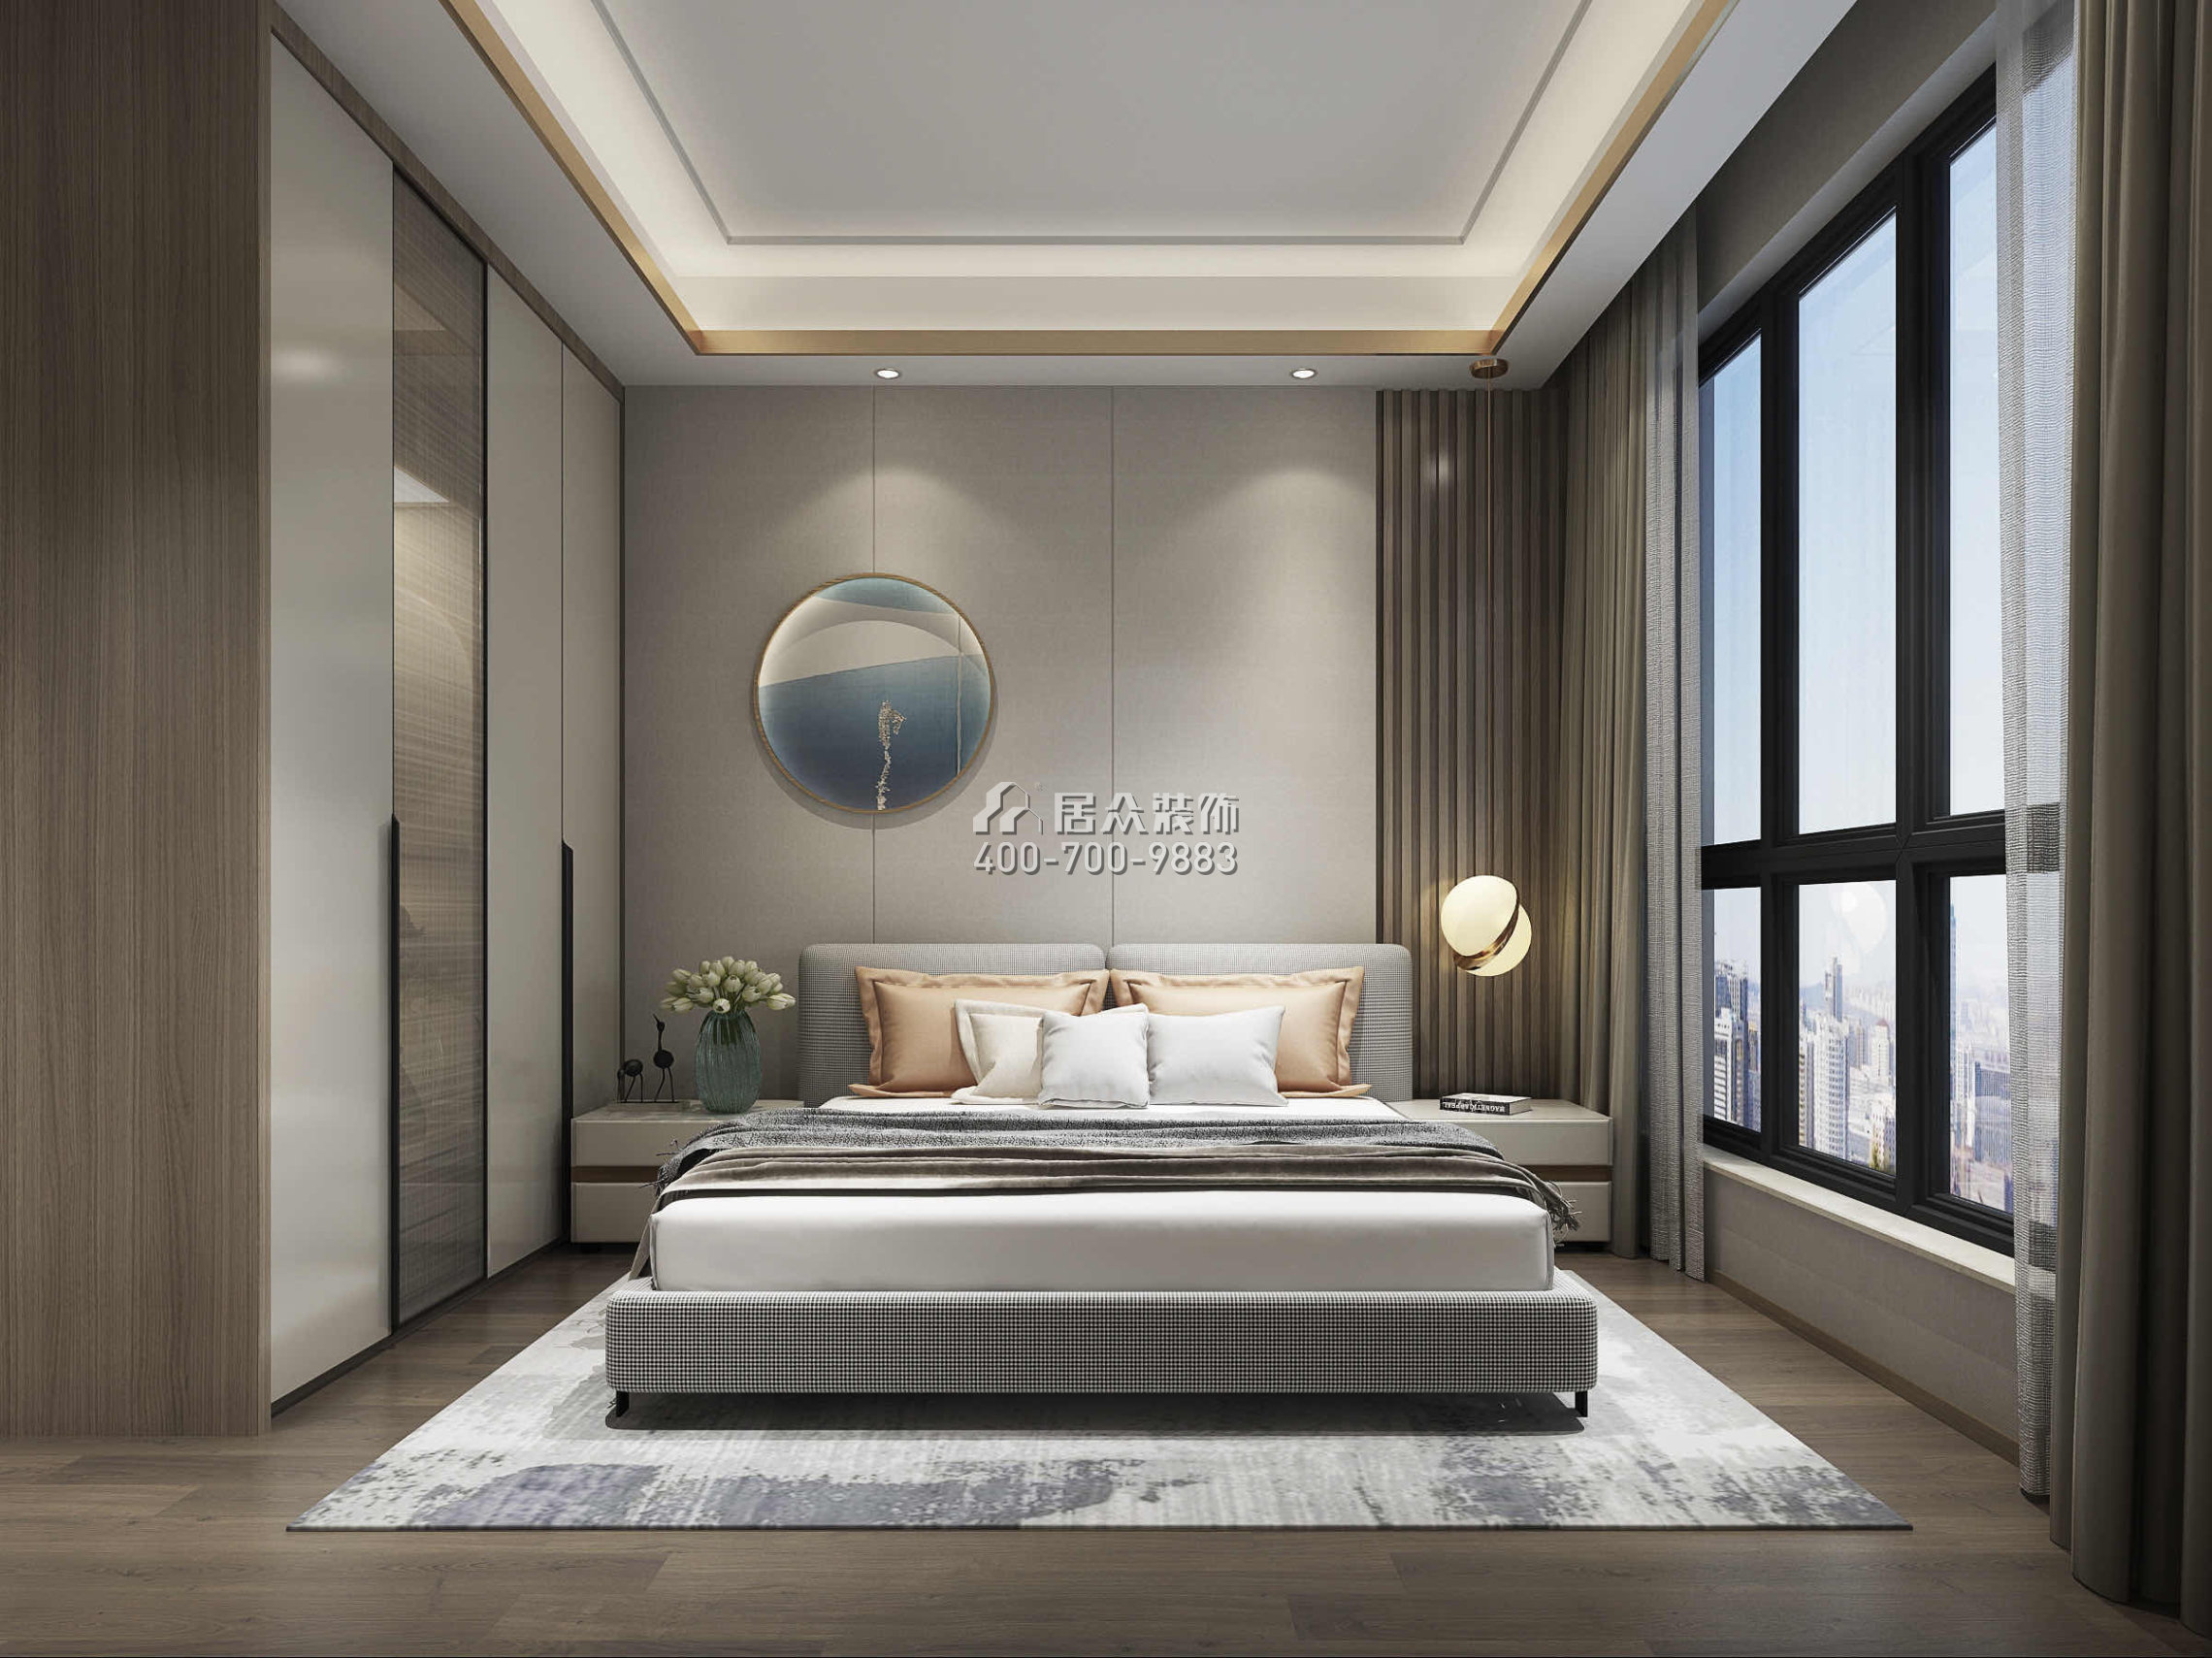 华尔顿1275158平方米中式风格平层户型卧室装修效果图